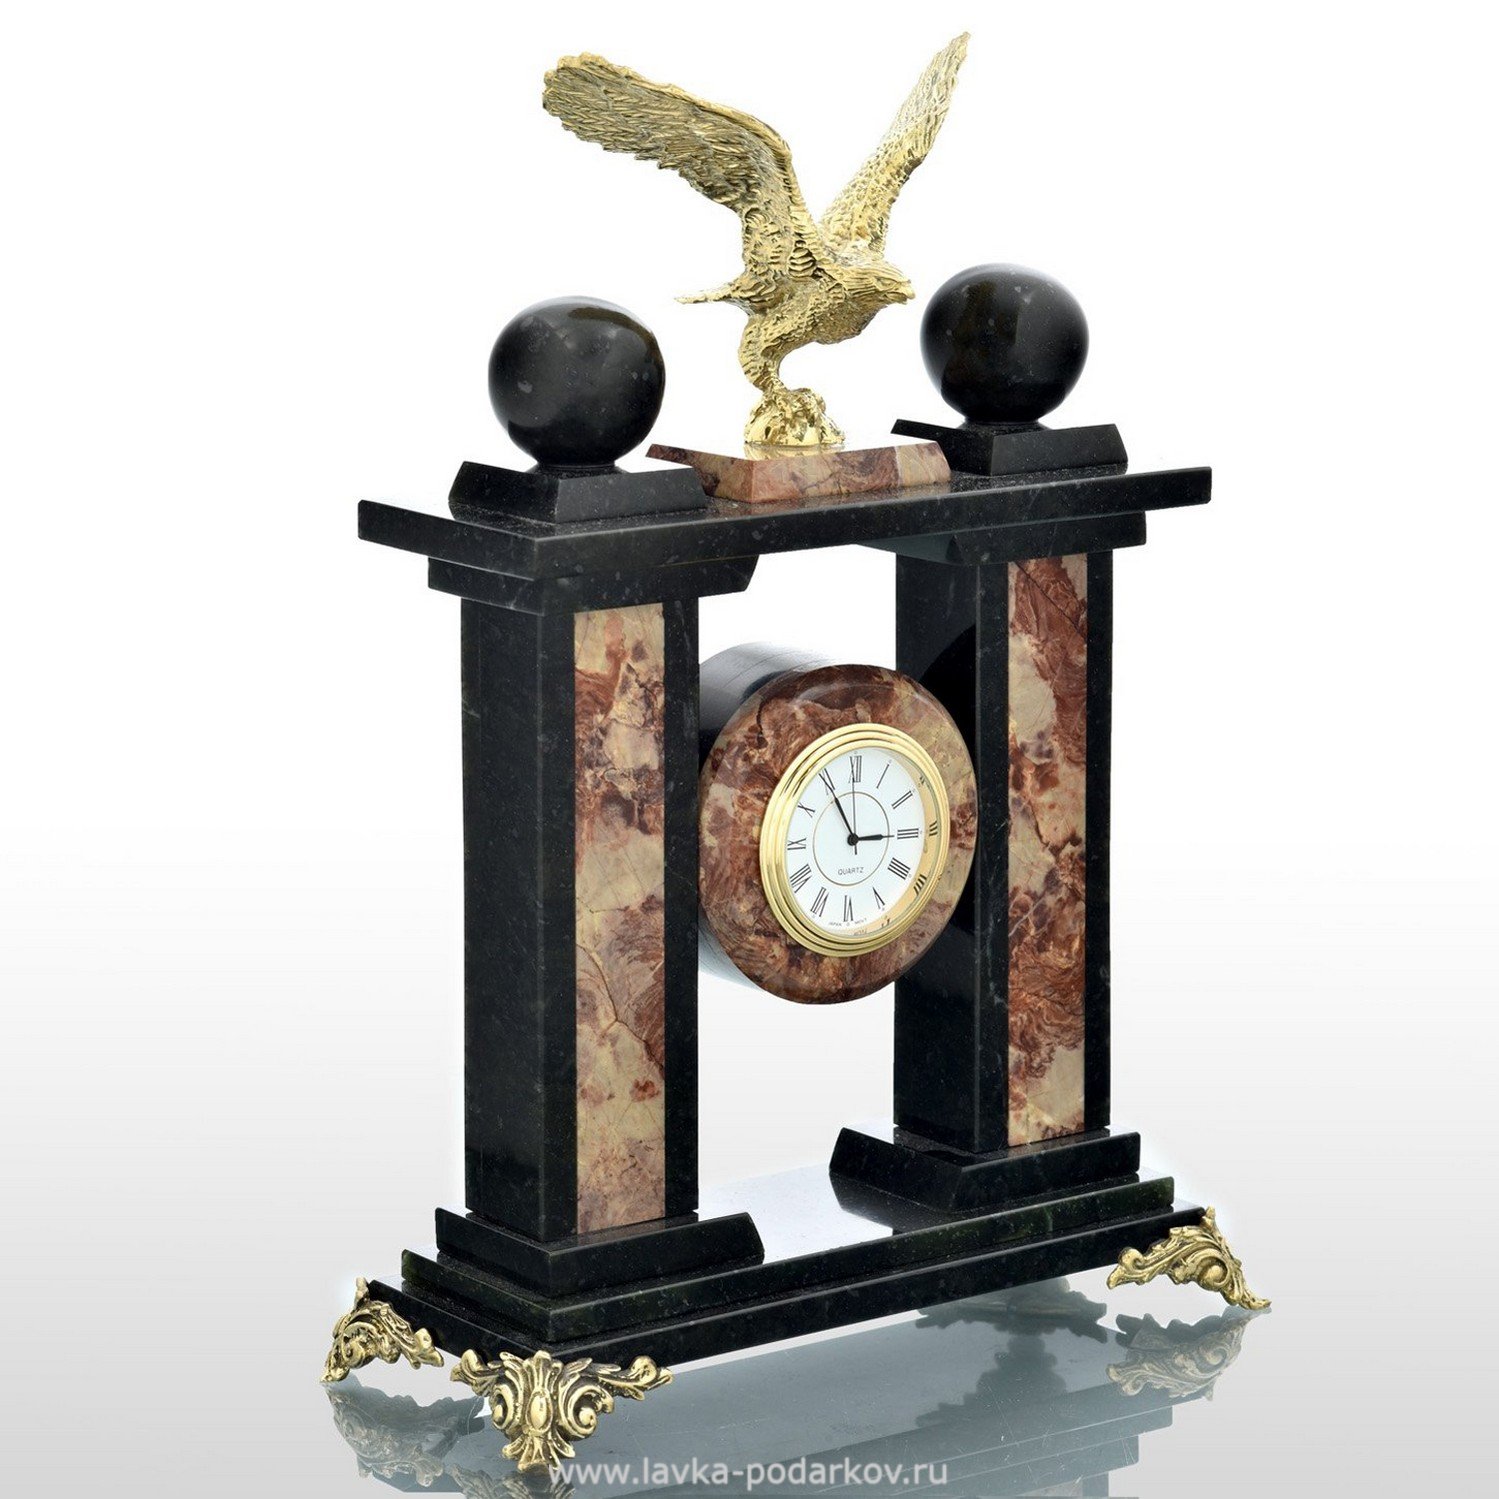 Прием часов орел. Часы с орлом. Часы "Орел" родонит. Часы ОЧЗ настенные. Сувенир часы и Орел на Камне Франция.